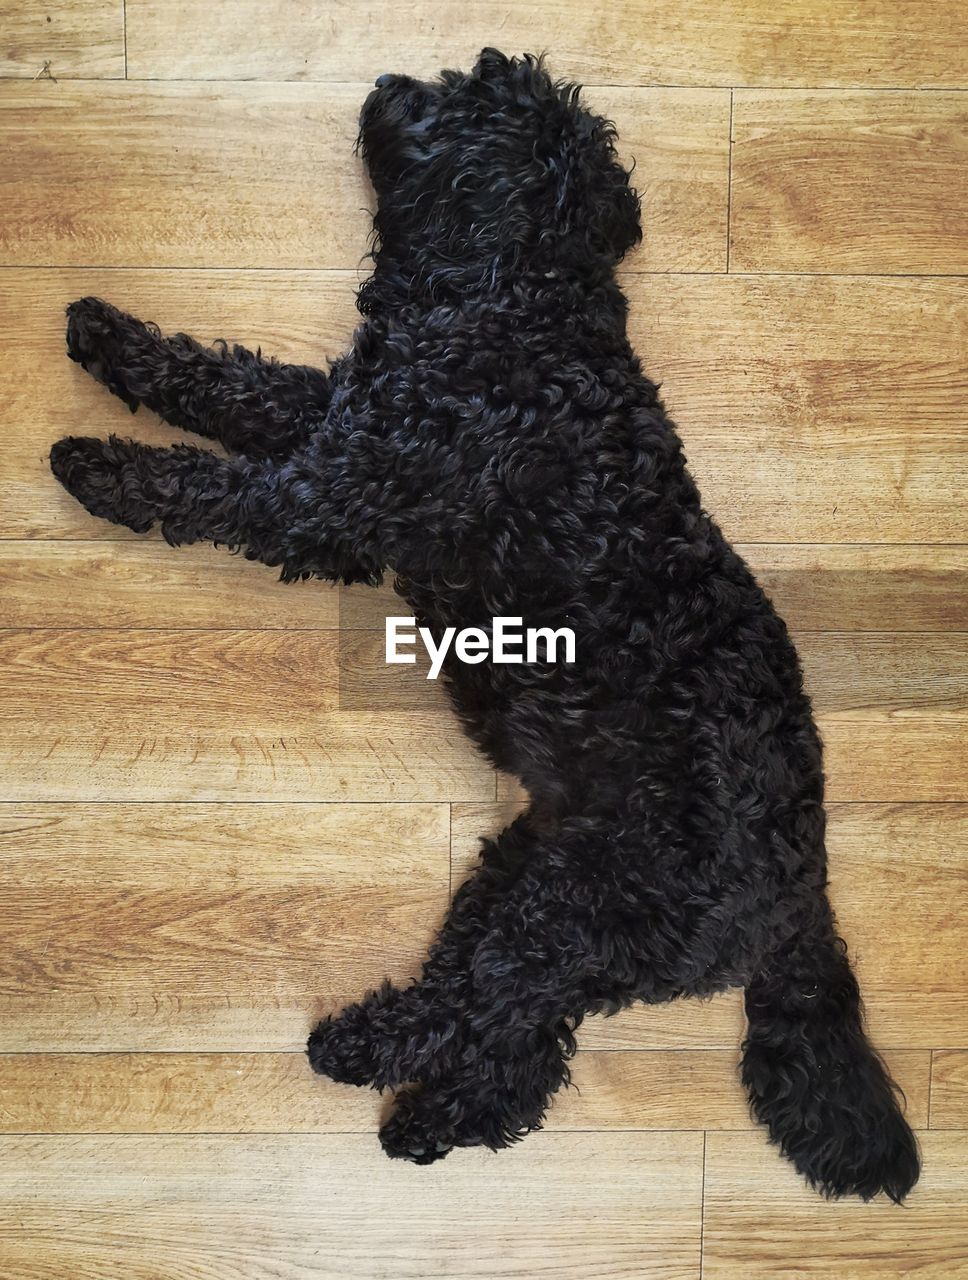 SHADOW OF A DOG LYING ON FLOOR